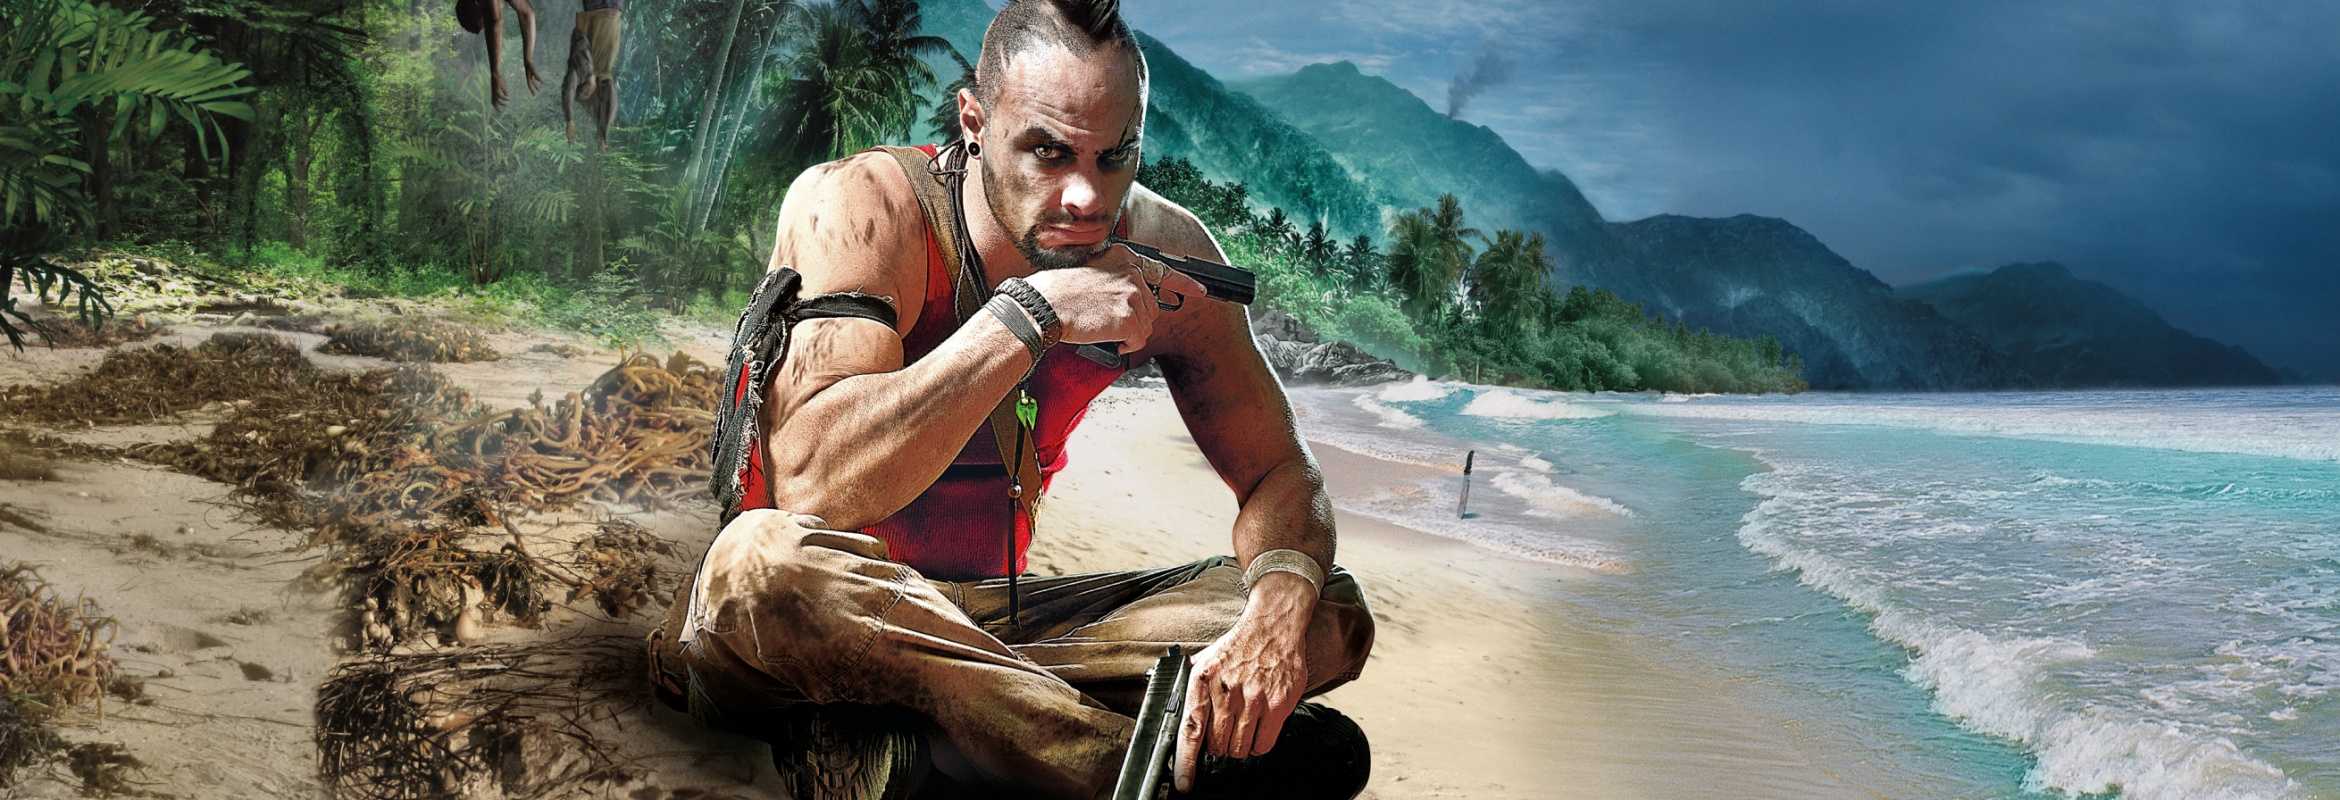 Far cry серия игр — все части игры far cry по порядку